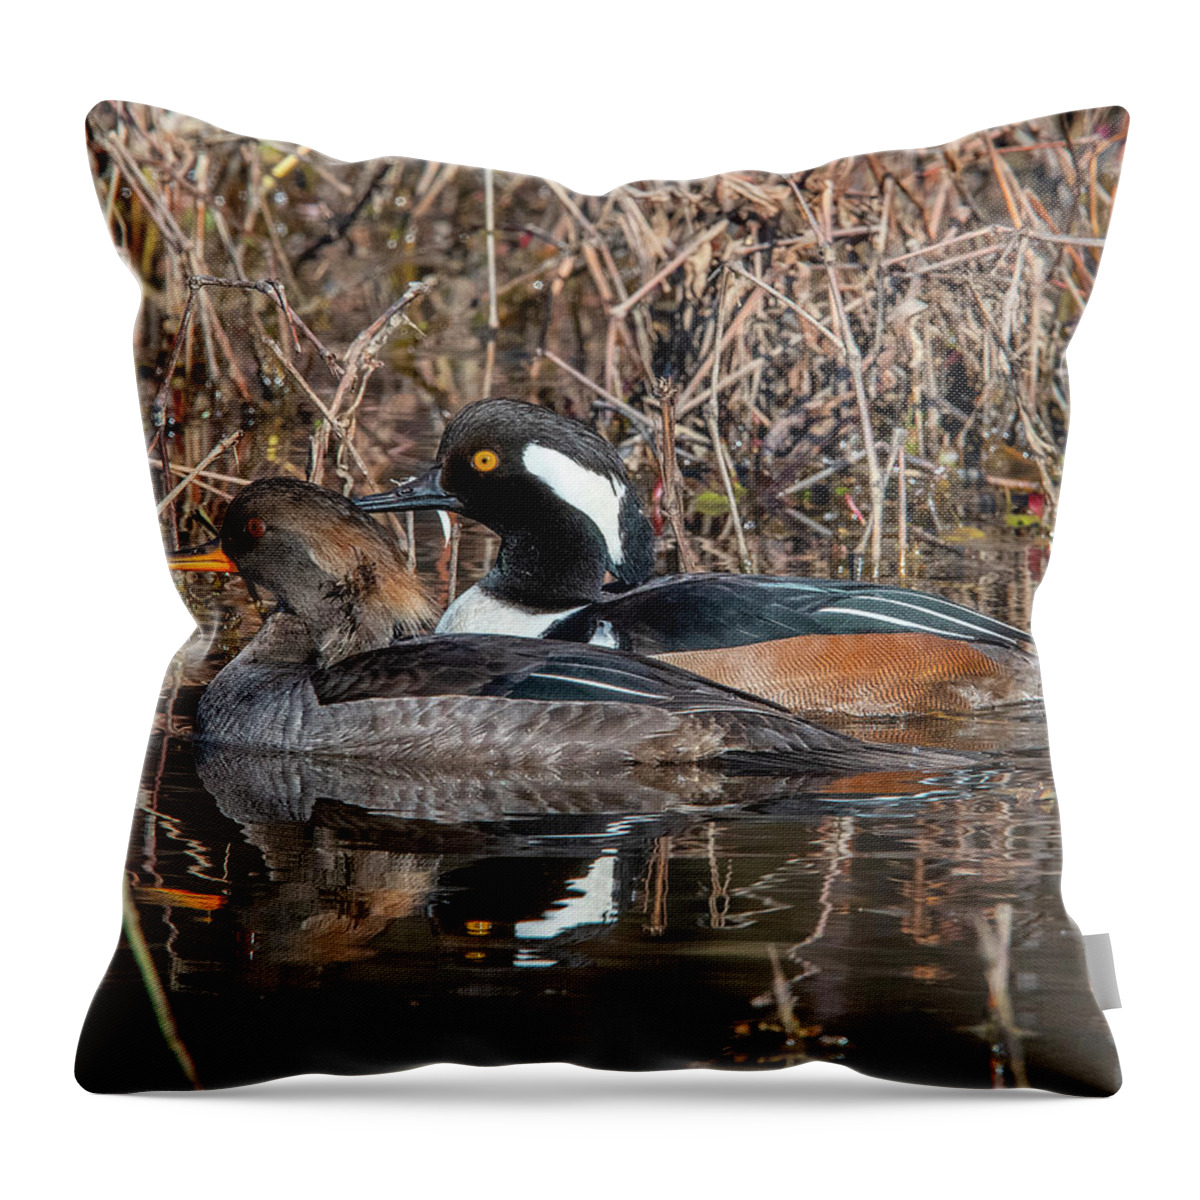 Nature Throw Pillow featuring the photograph Hooded Merganser Pair DWF0230 by Gerry Gantt